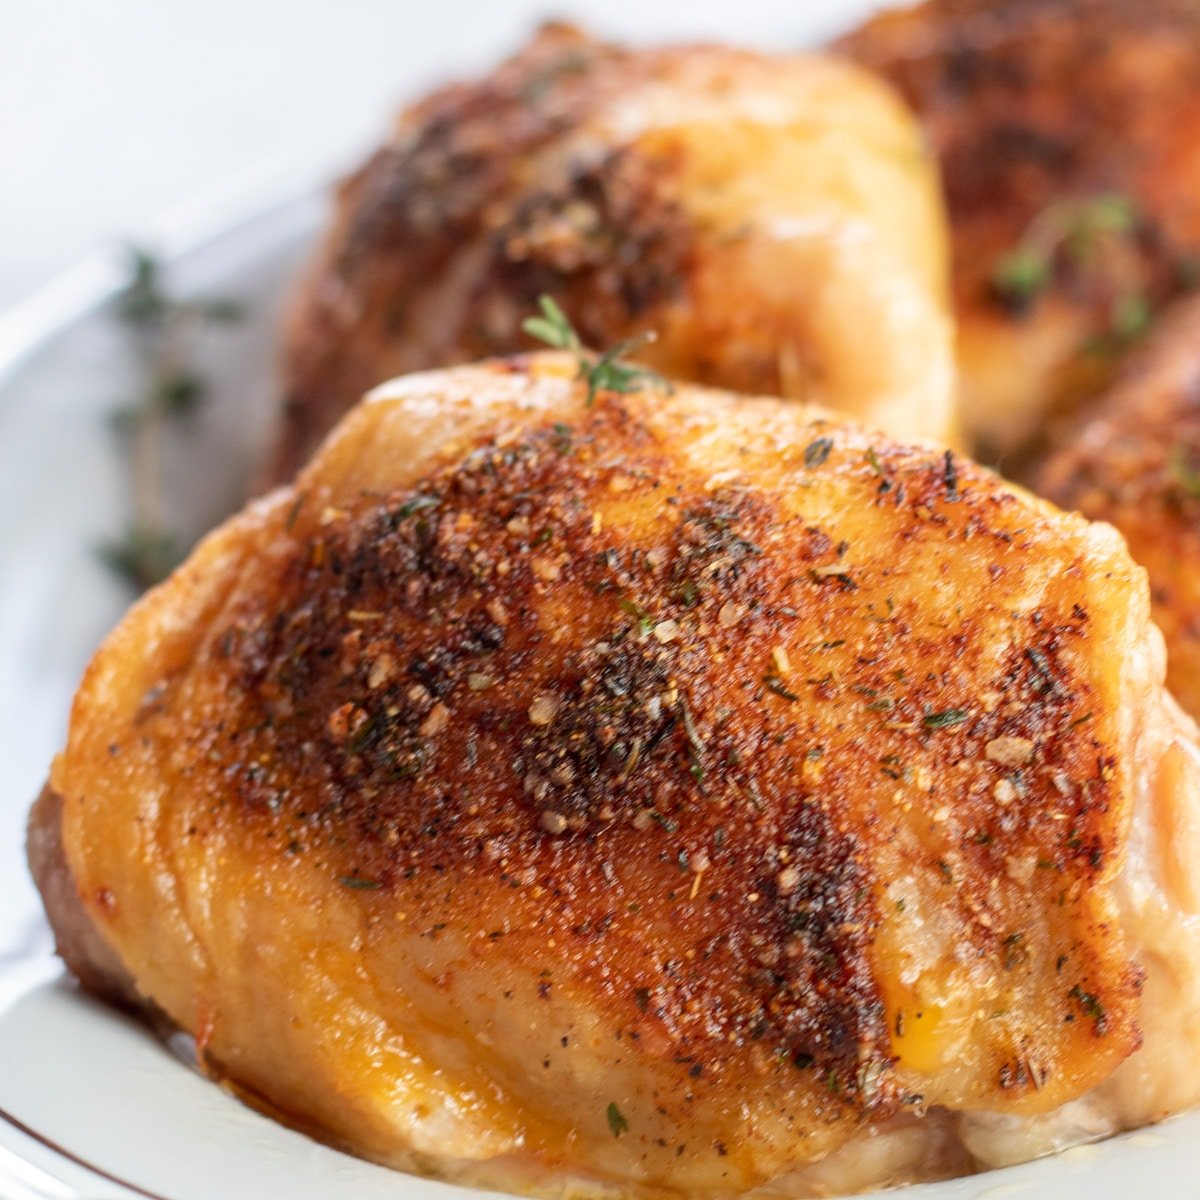 Vierkant close-up beeld van in de oven gebakken kippendijen op een witte serveerschaal.